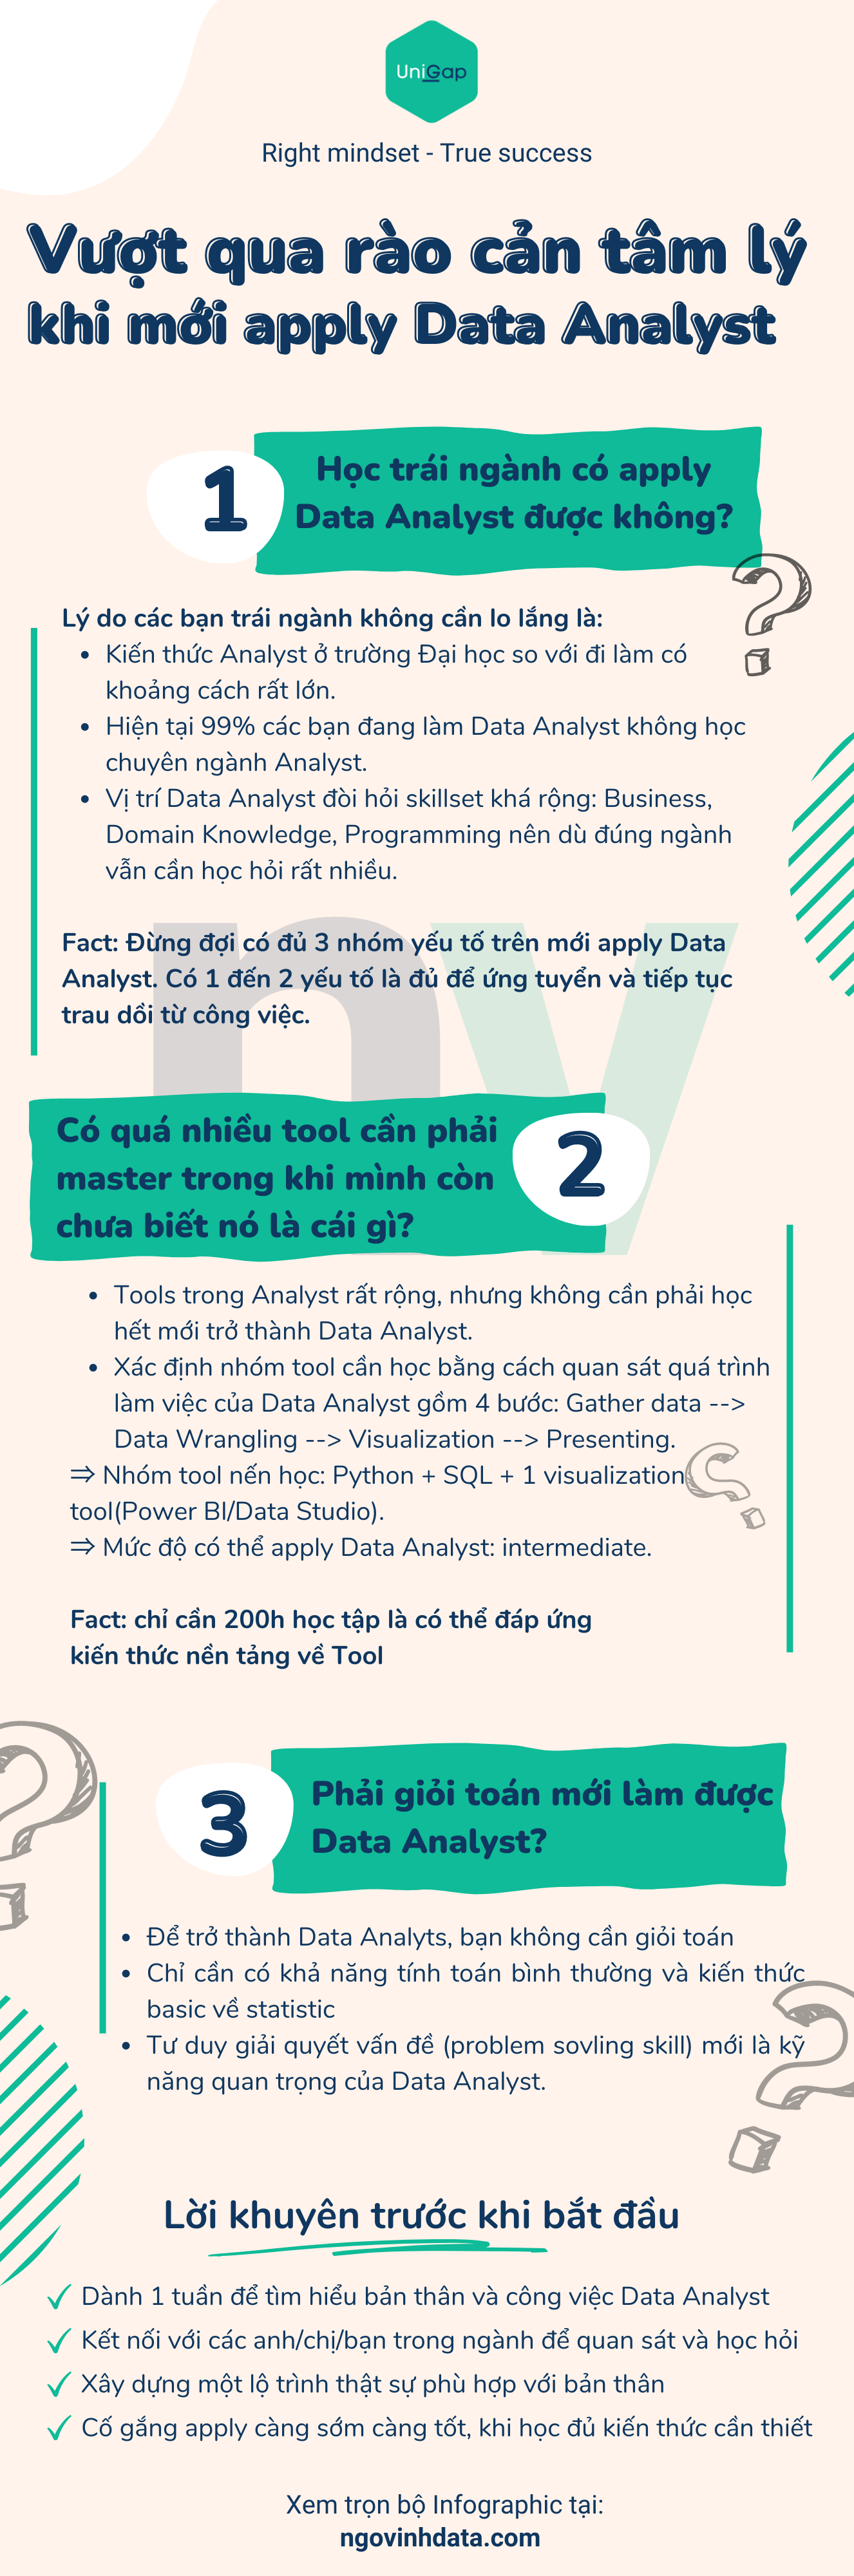 Infographic “Vượt qua rào cản tâm lý khi mới apply Data Analyst”